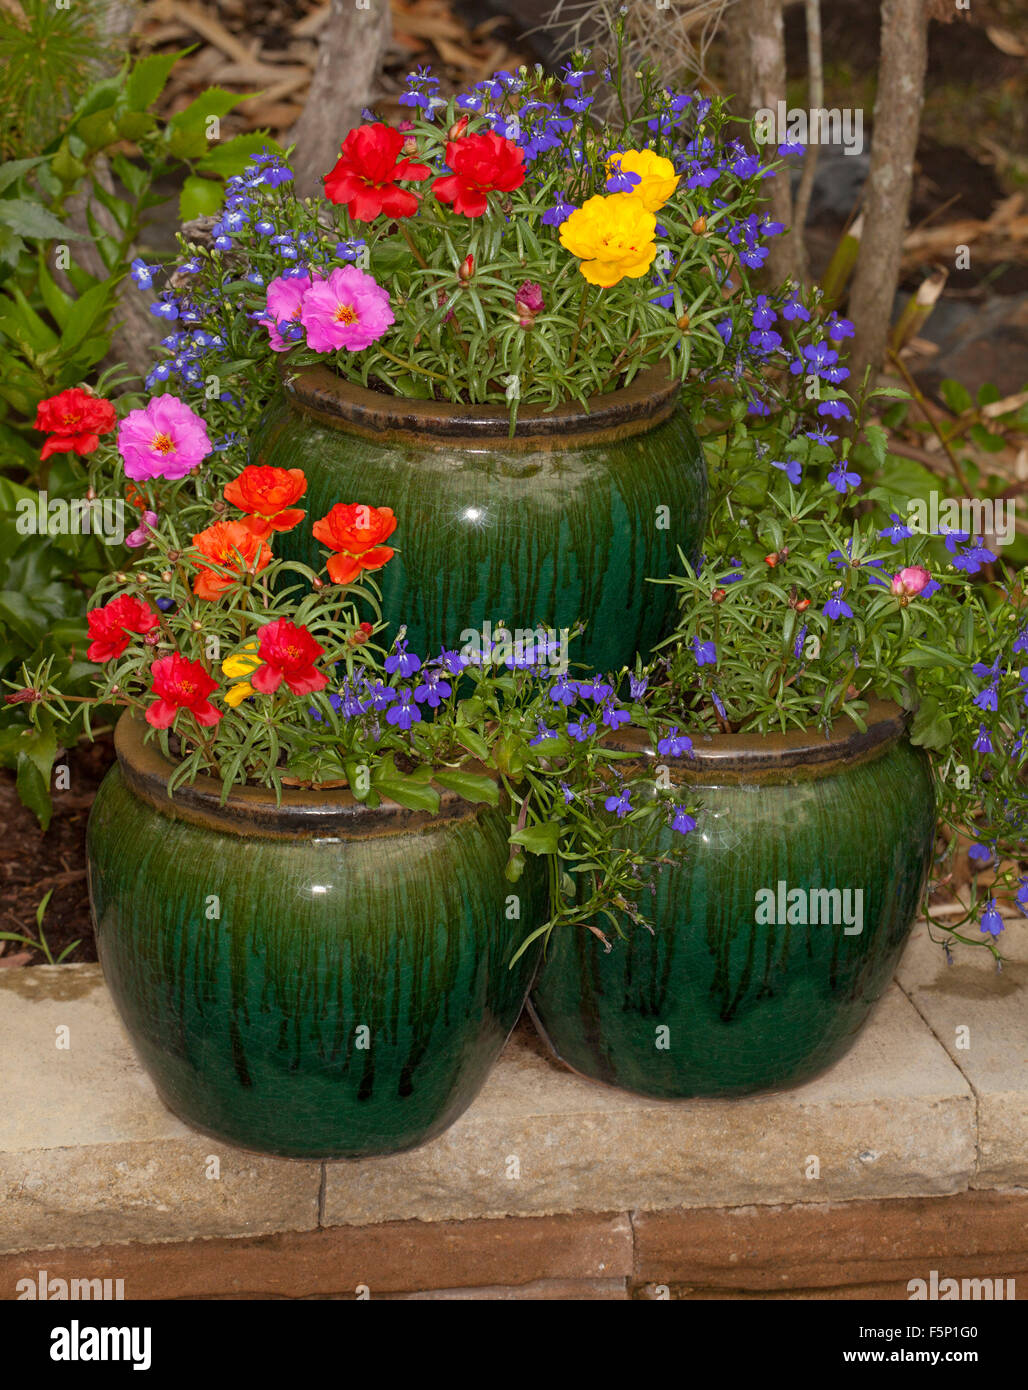 Masa de coloridas flores de primavera anuarios, amarillo, rojo, rosa y azul portulacas lobelia en recipiente de cerámica verde oscuro / strawberry pot Foto de stock